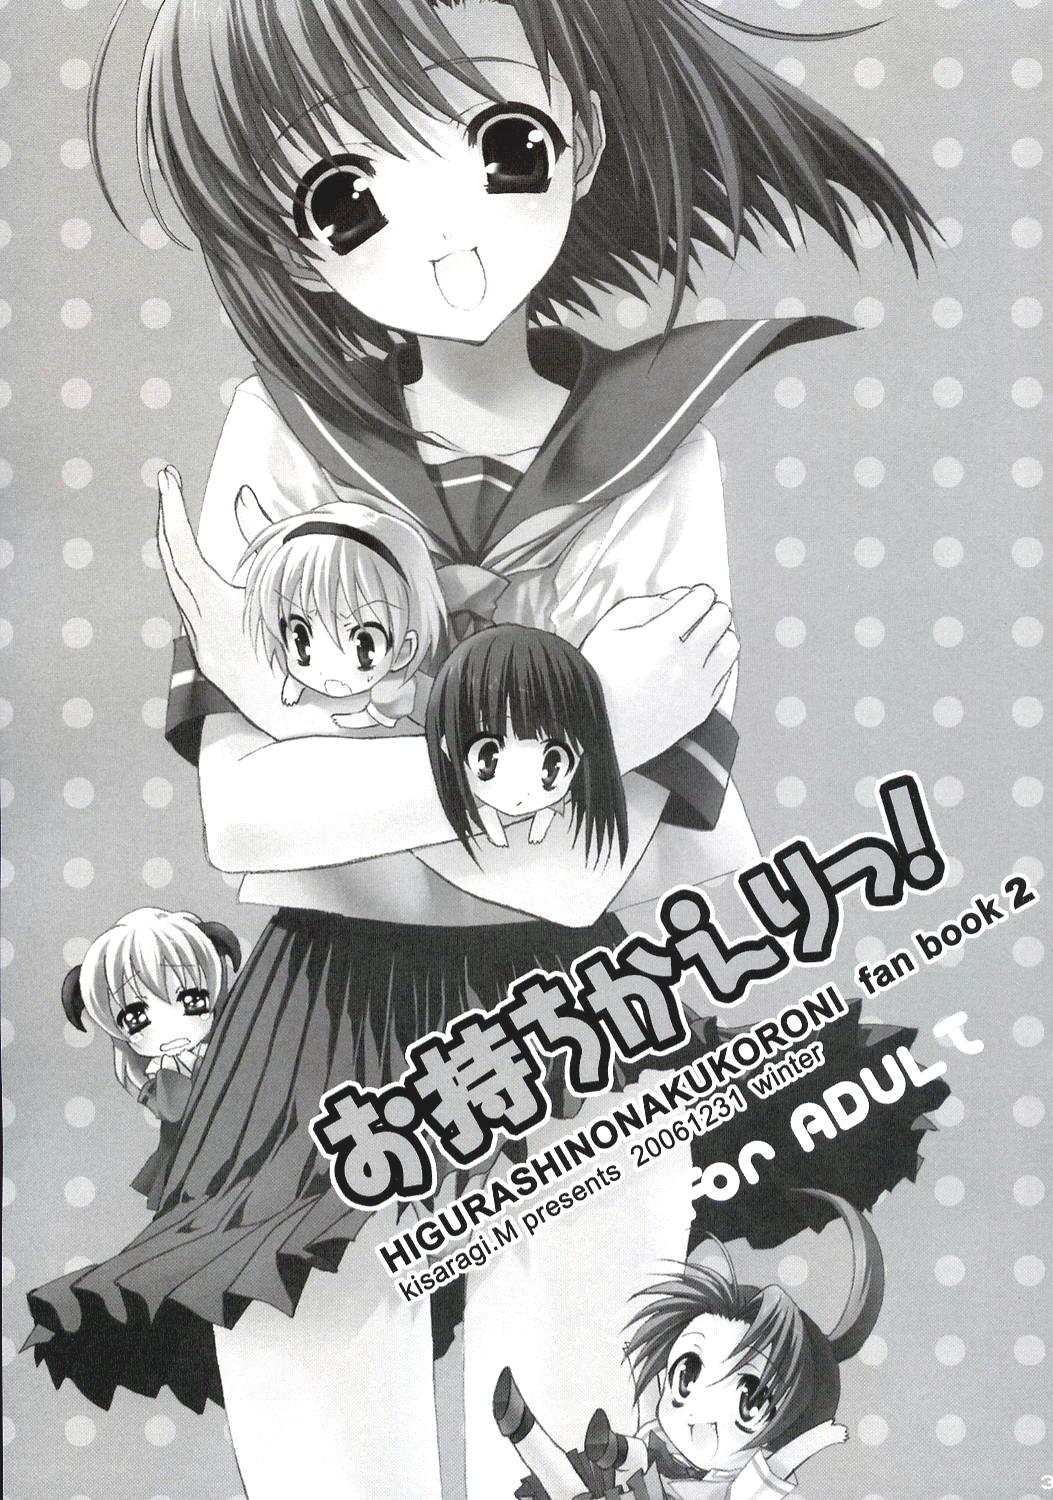 Lesbo Omochikaeri! - Higurashi no naku koro ni Doggystyle - Page 2